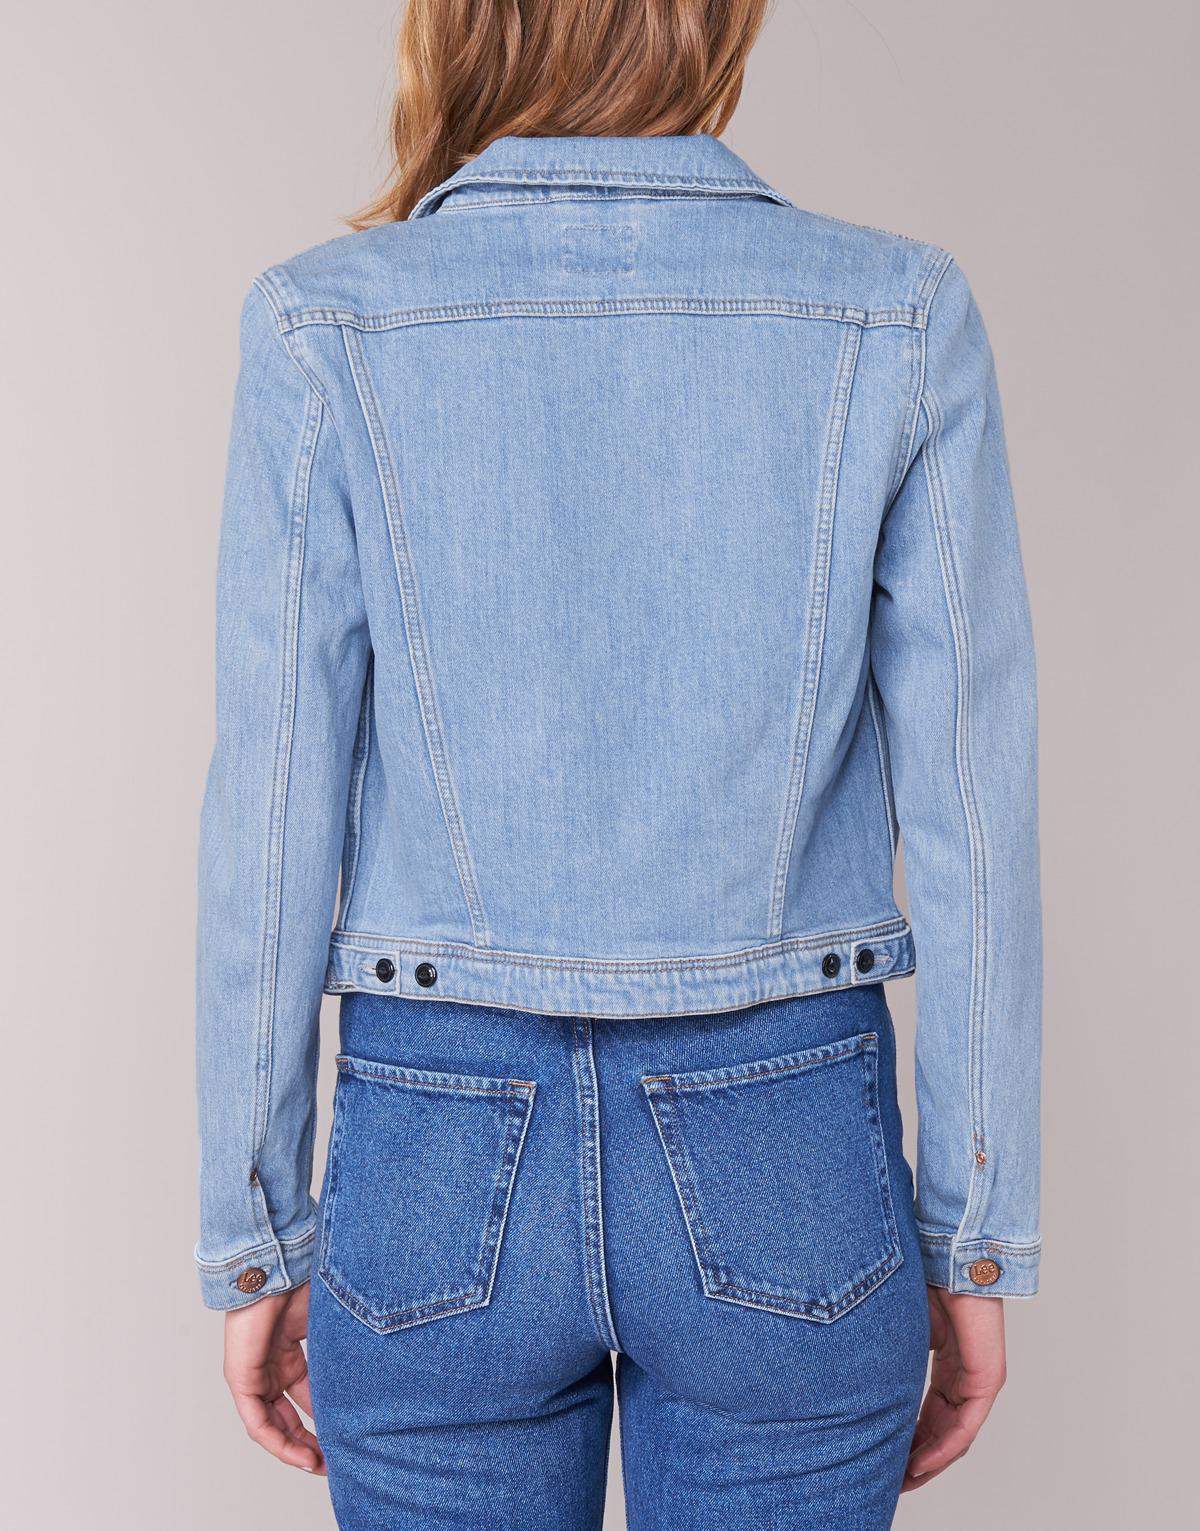 Lee Jeans Rider Jacket Women's Denim Jacket In Blue - Lyst